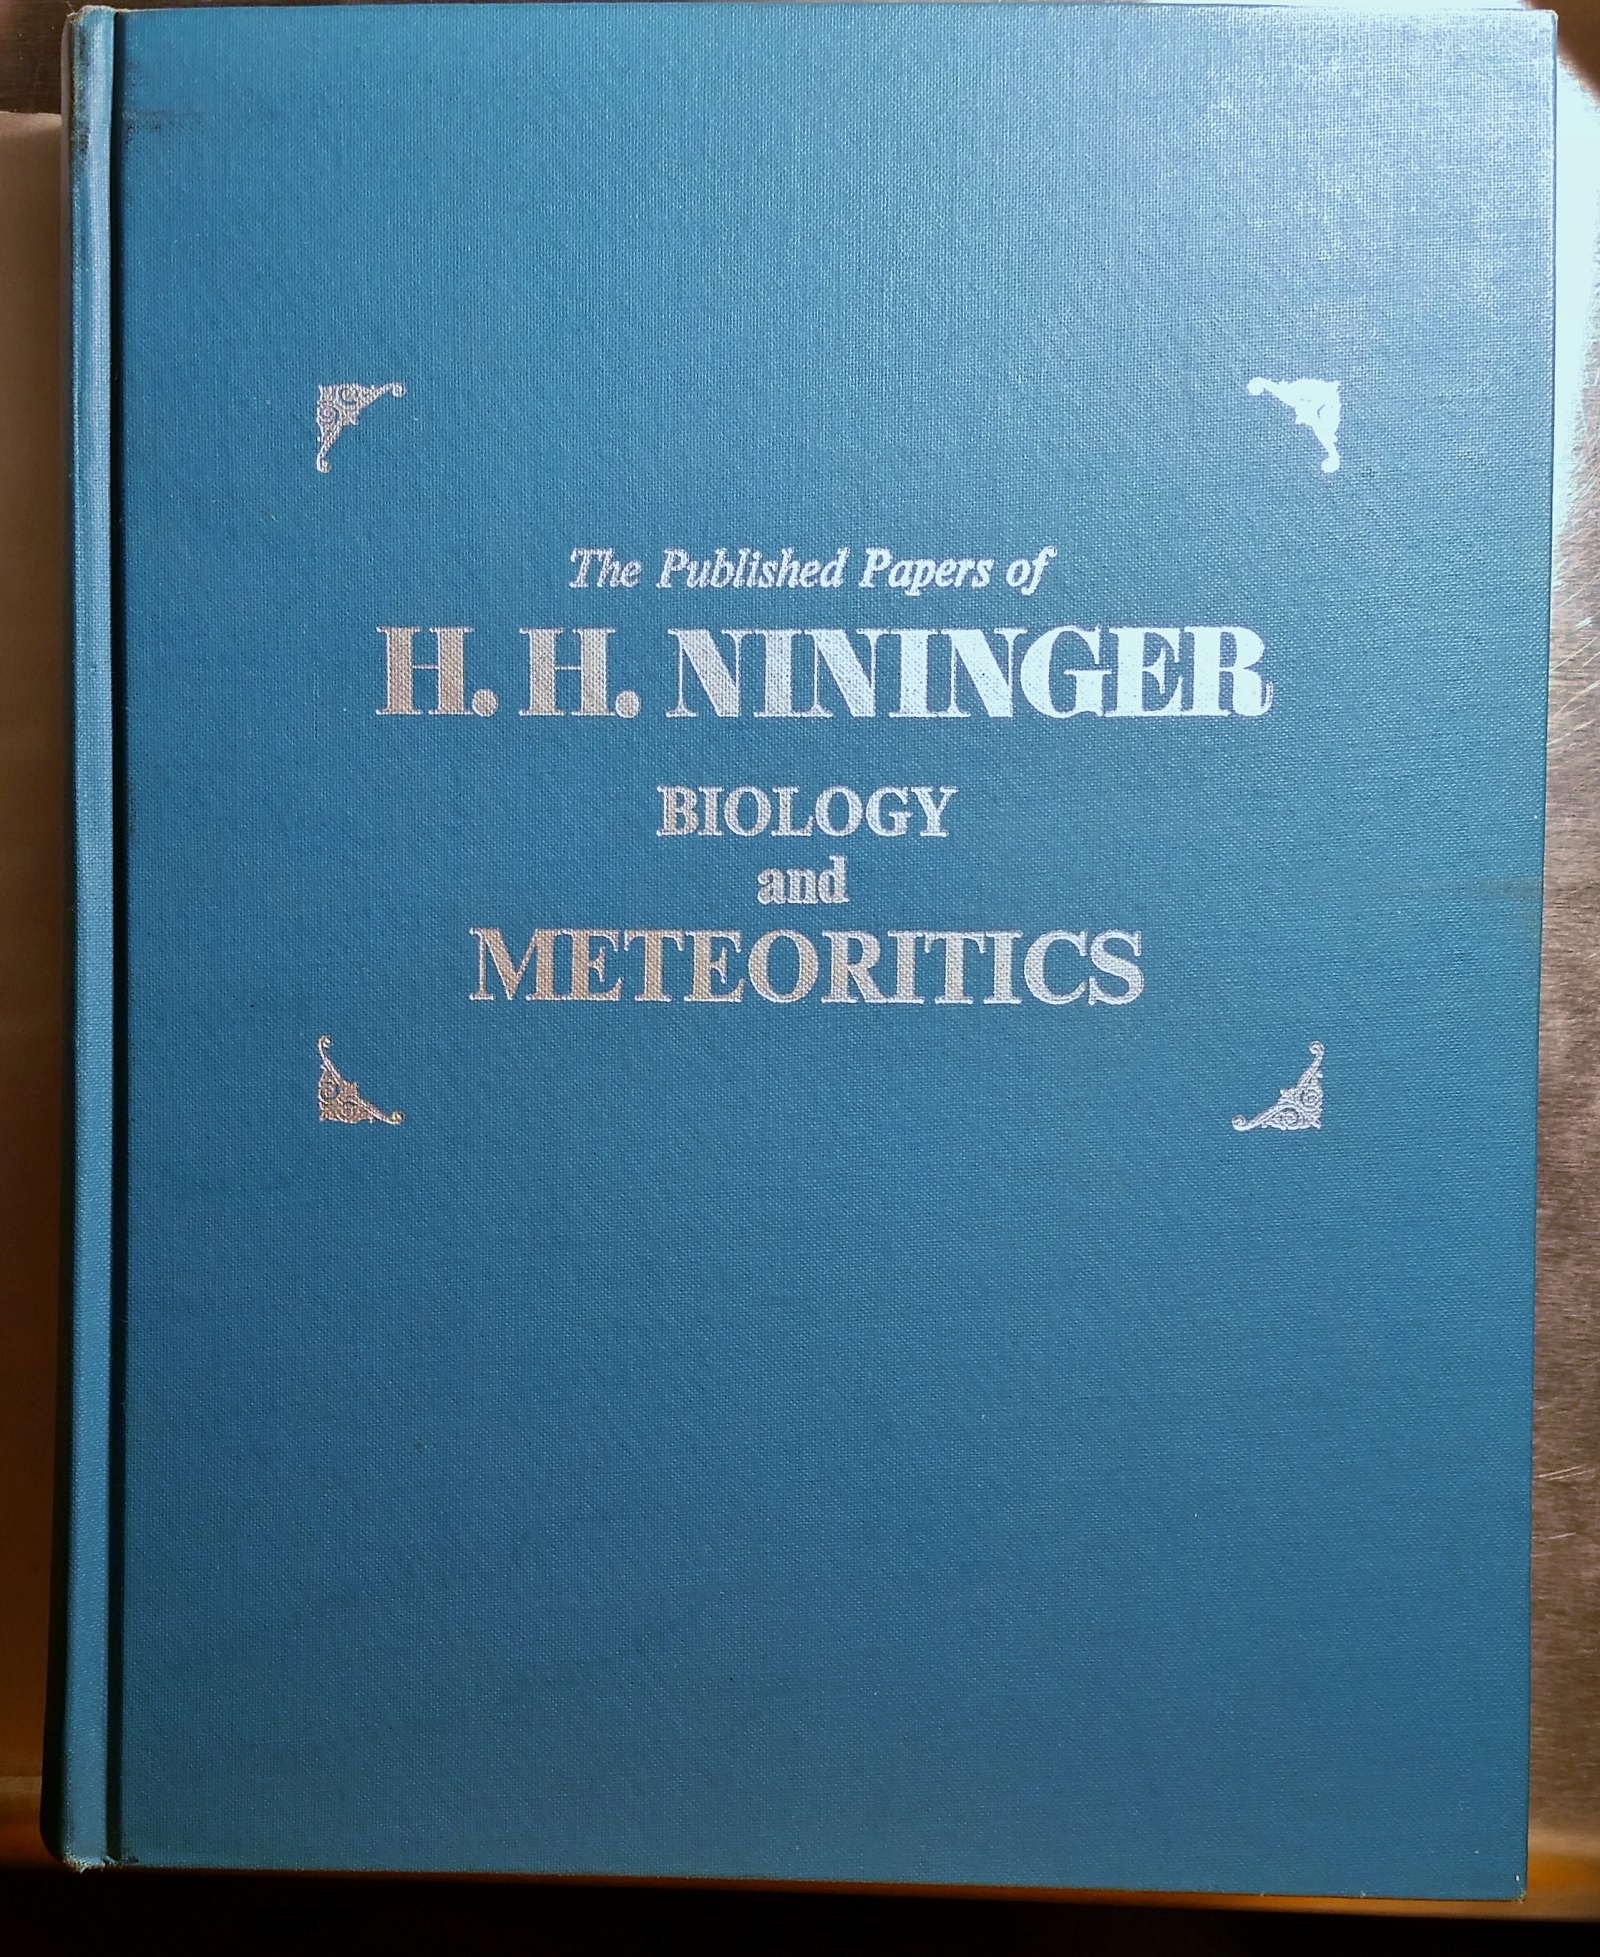 signed by Nininger